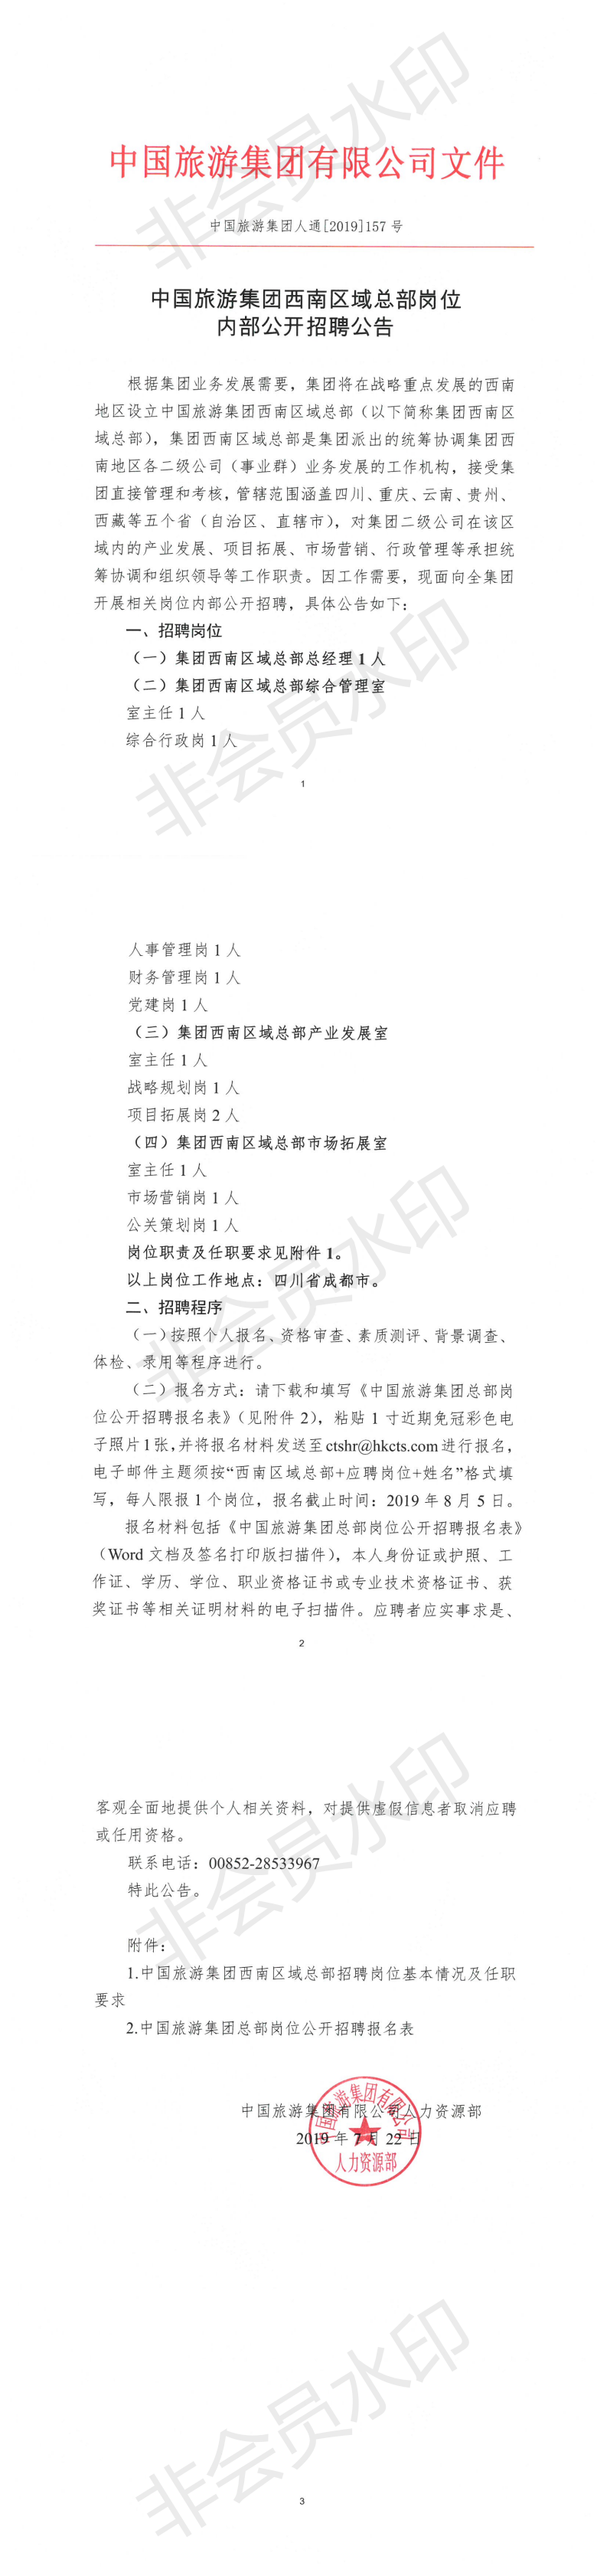 中国旅游集团人通[2019]157号--中国旅游集团西南区域总部岗位内部公开招聘公告_0.png